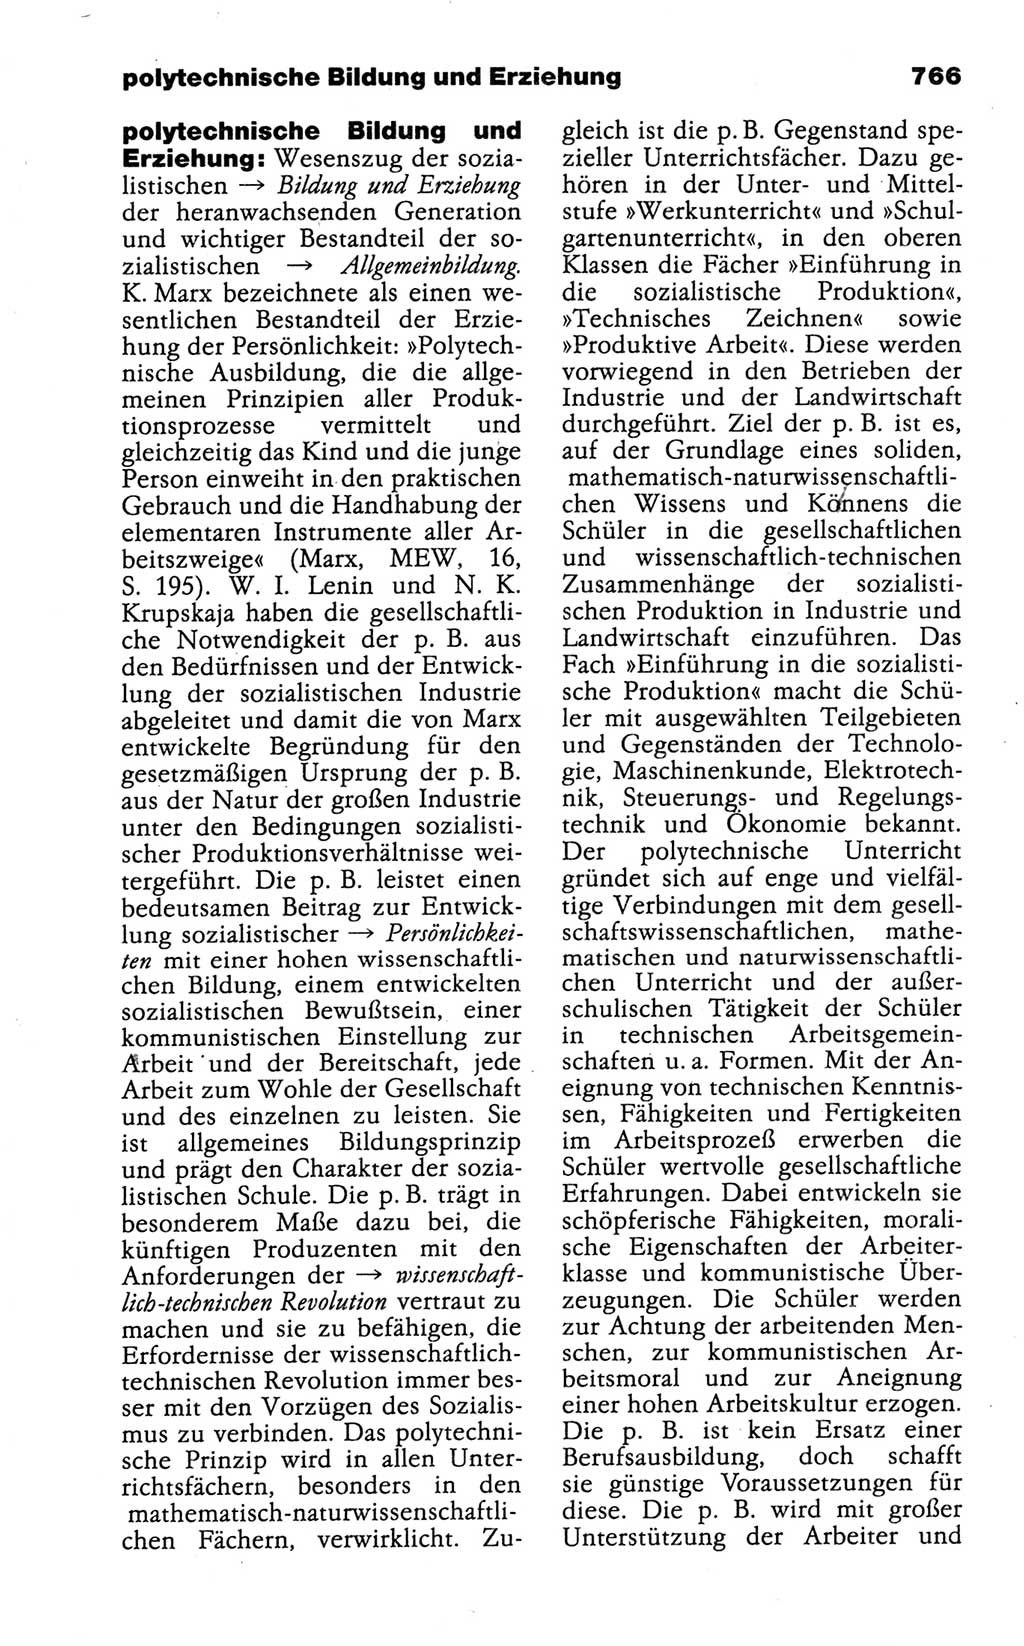 Kleines politisches Wörterbuch [Deutsche Demokratische Republik (DDR)] 1988, Seite 766 (Kl. pol. Wb. DDR 1988, S. 766)